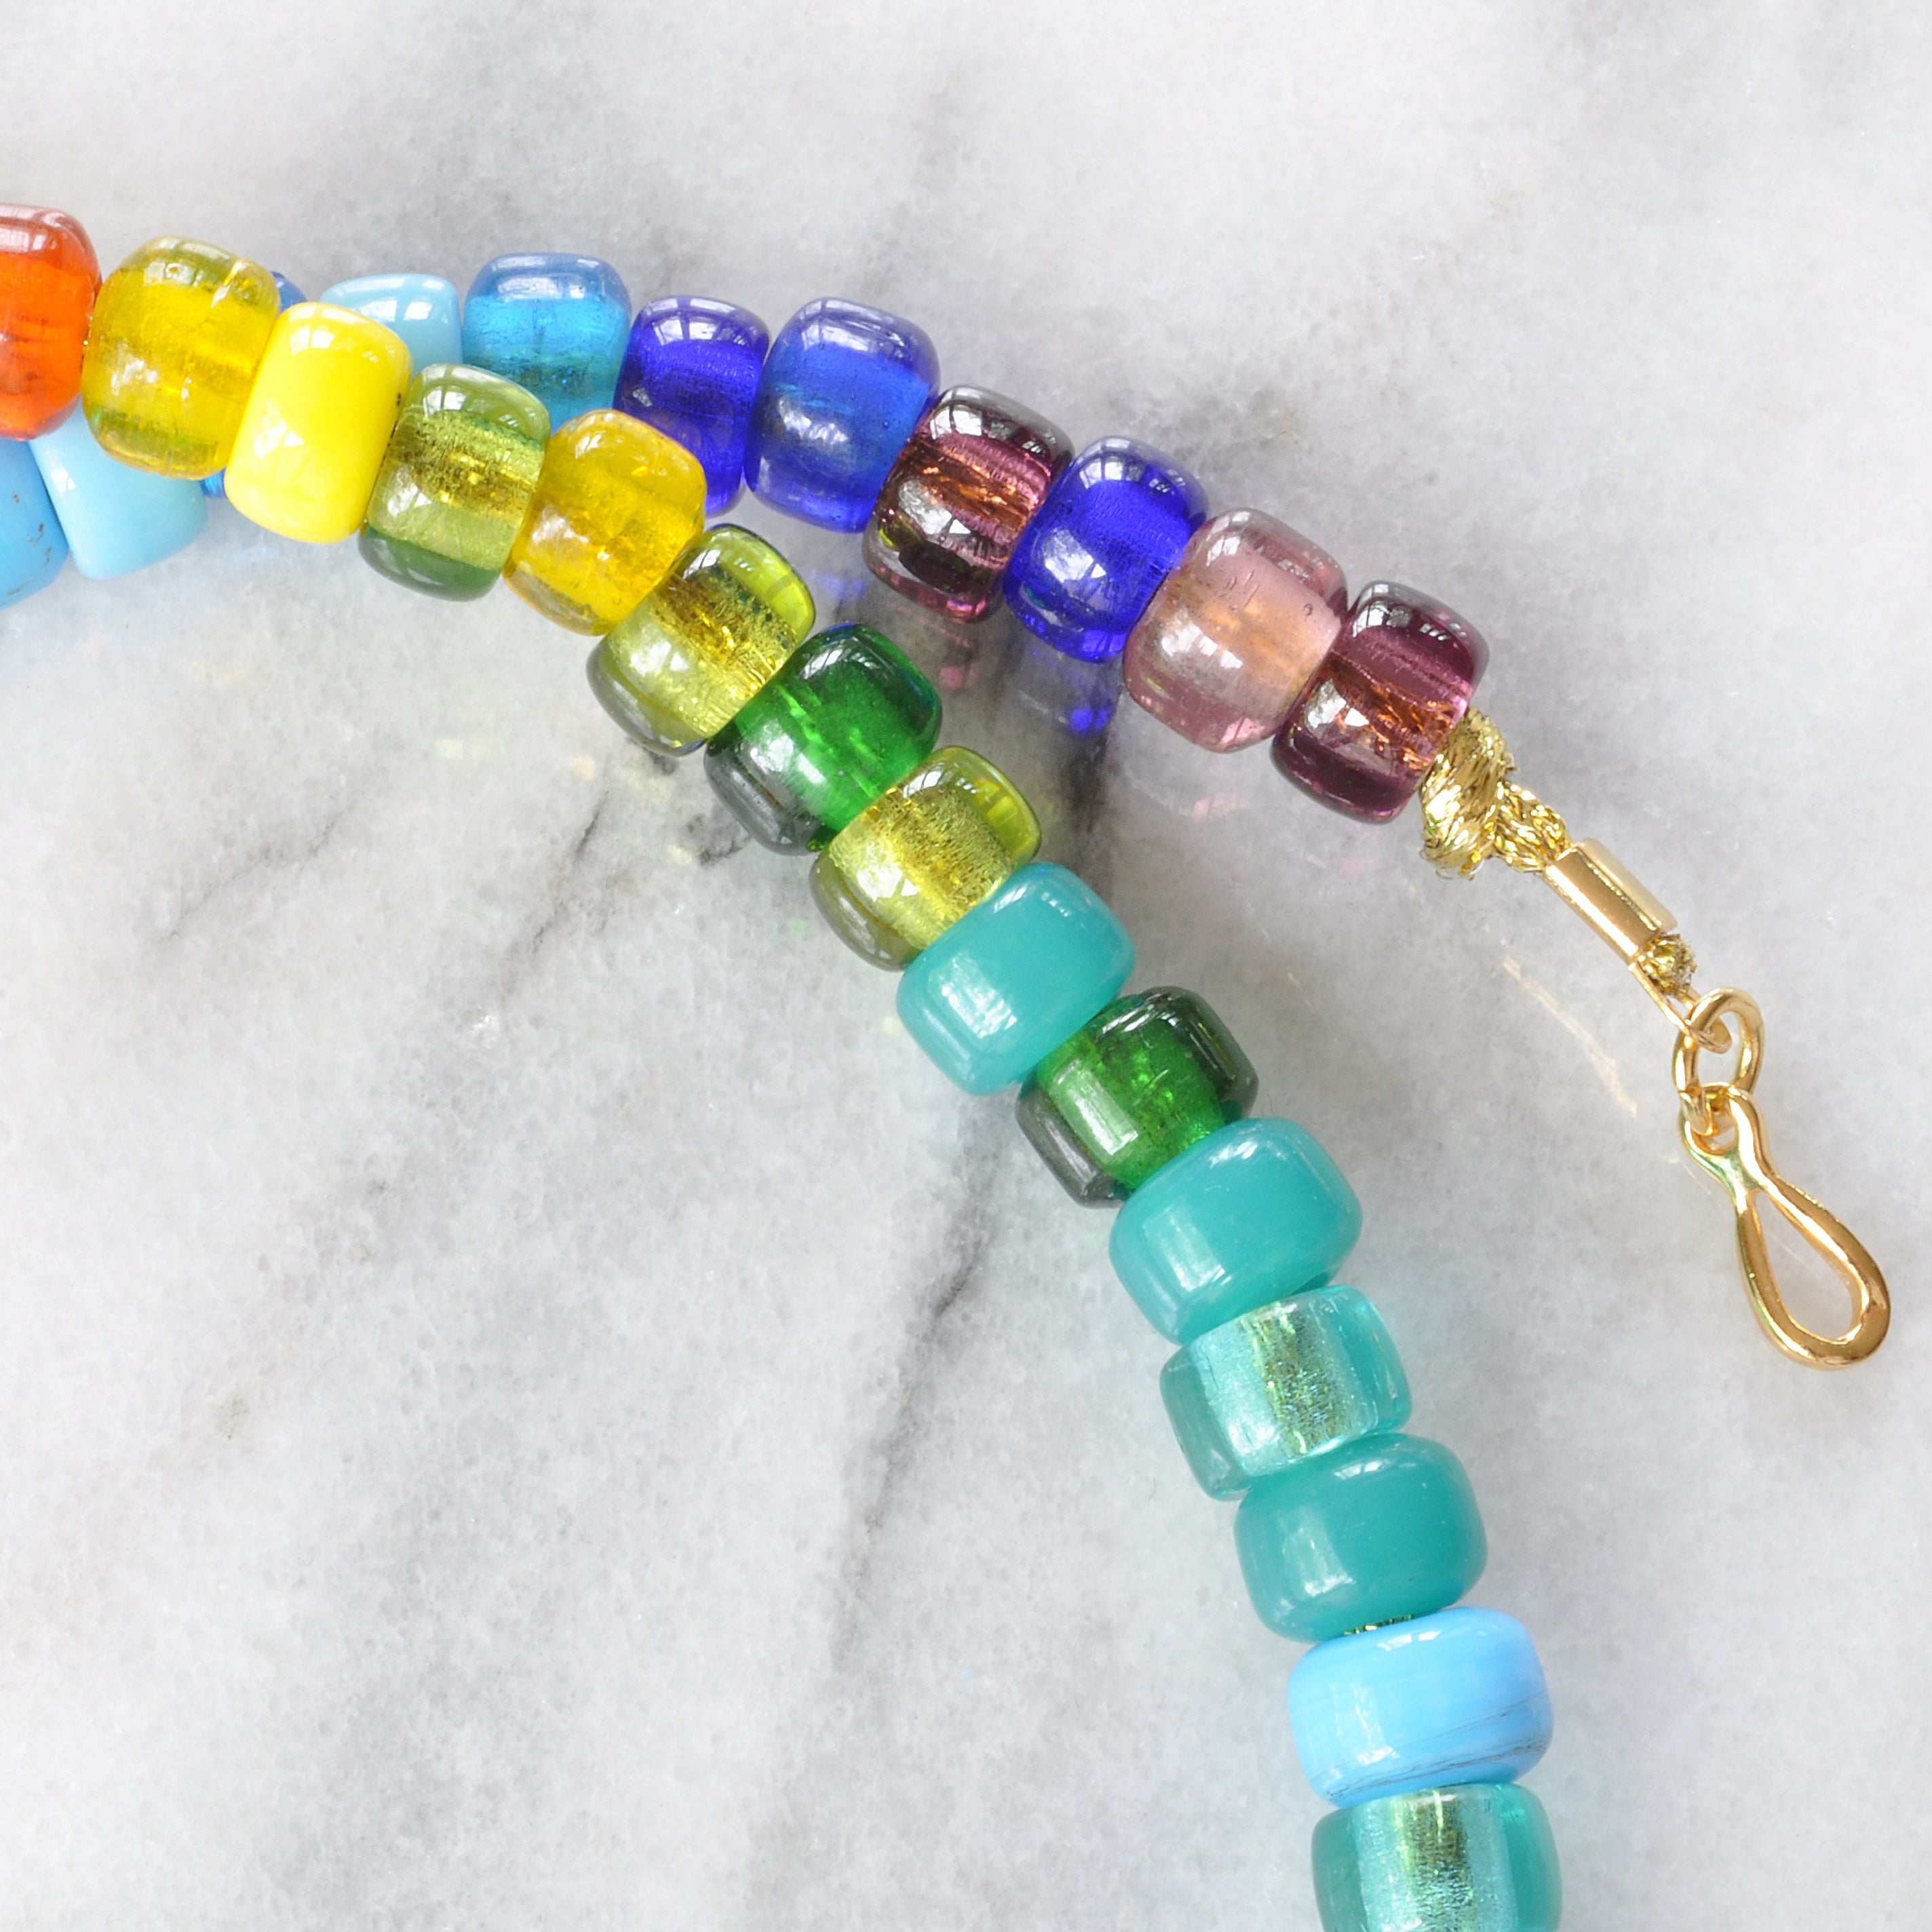 Rainbow Pony Bead Necklace